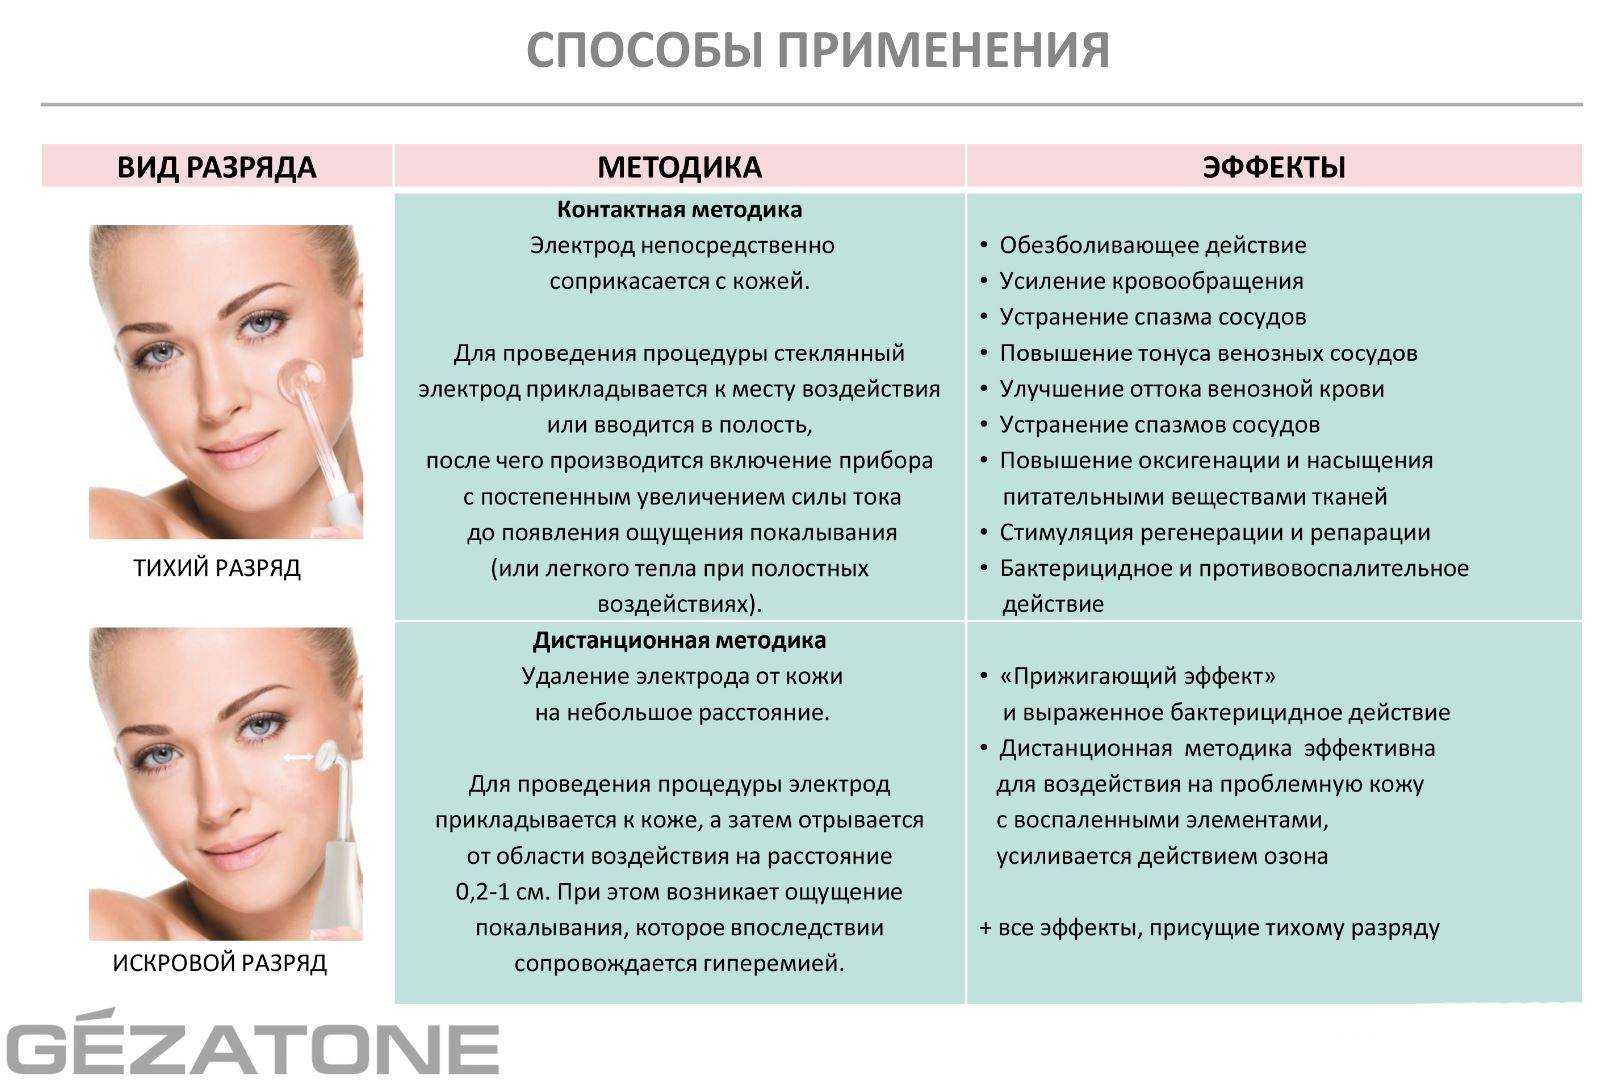 Prp-терапия: показания и противопоказания процедуры - косметология клиники seline